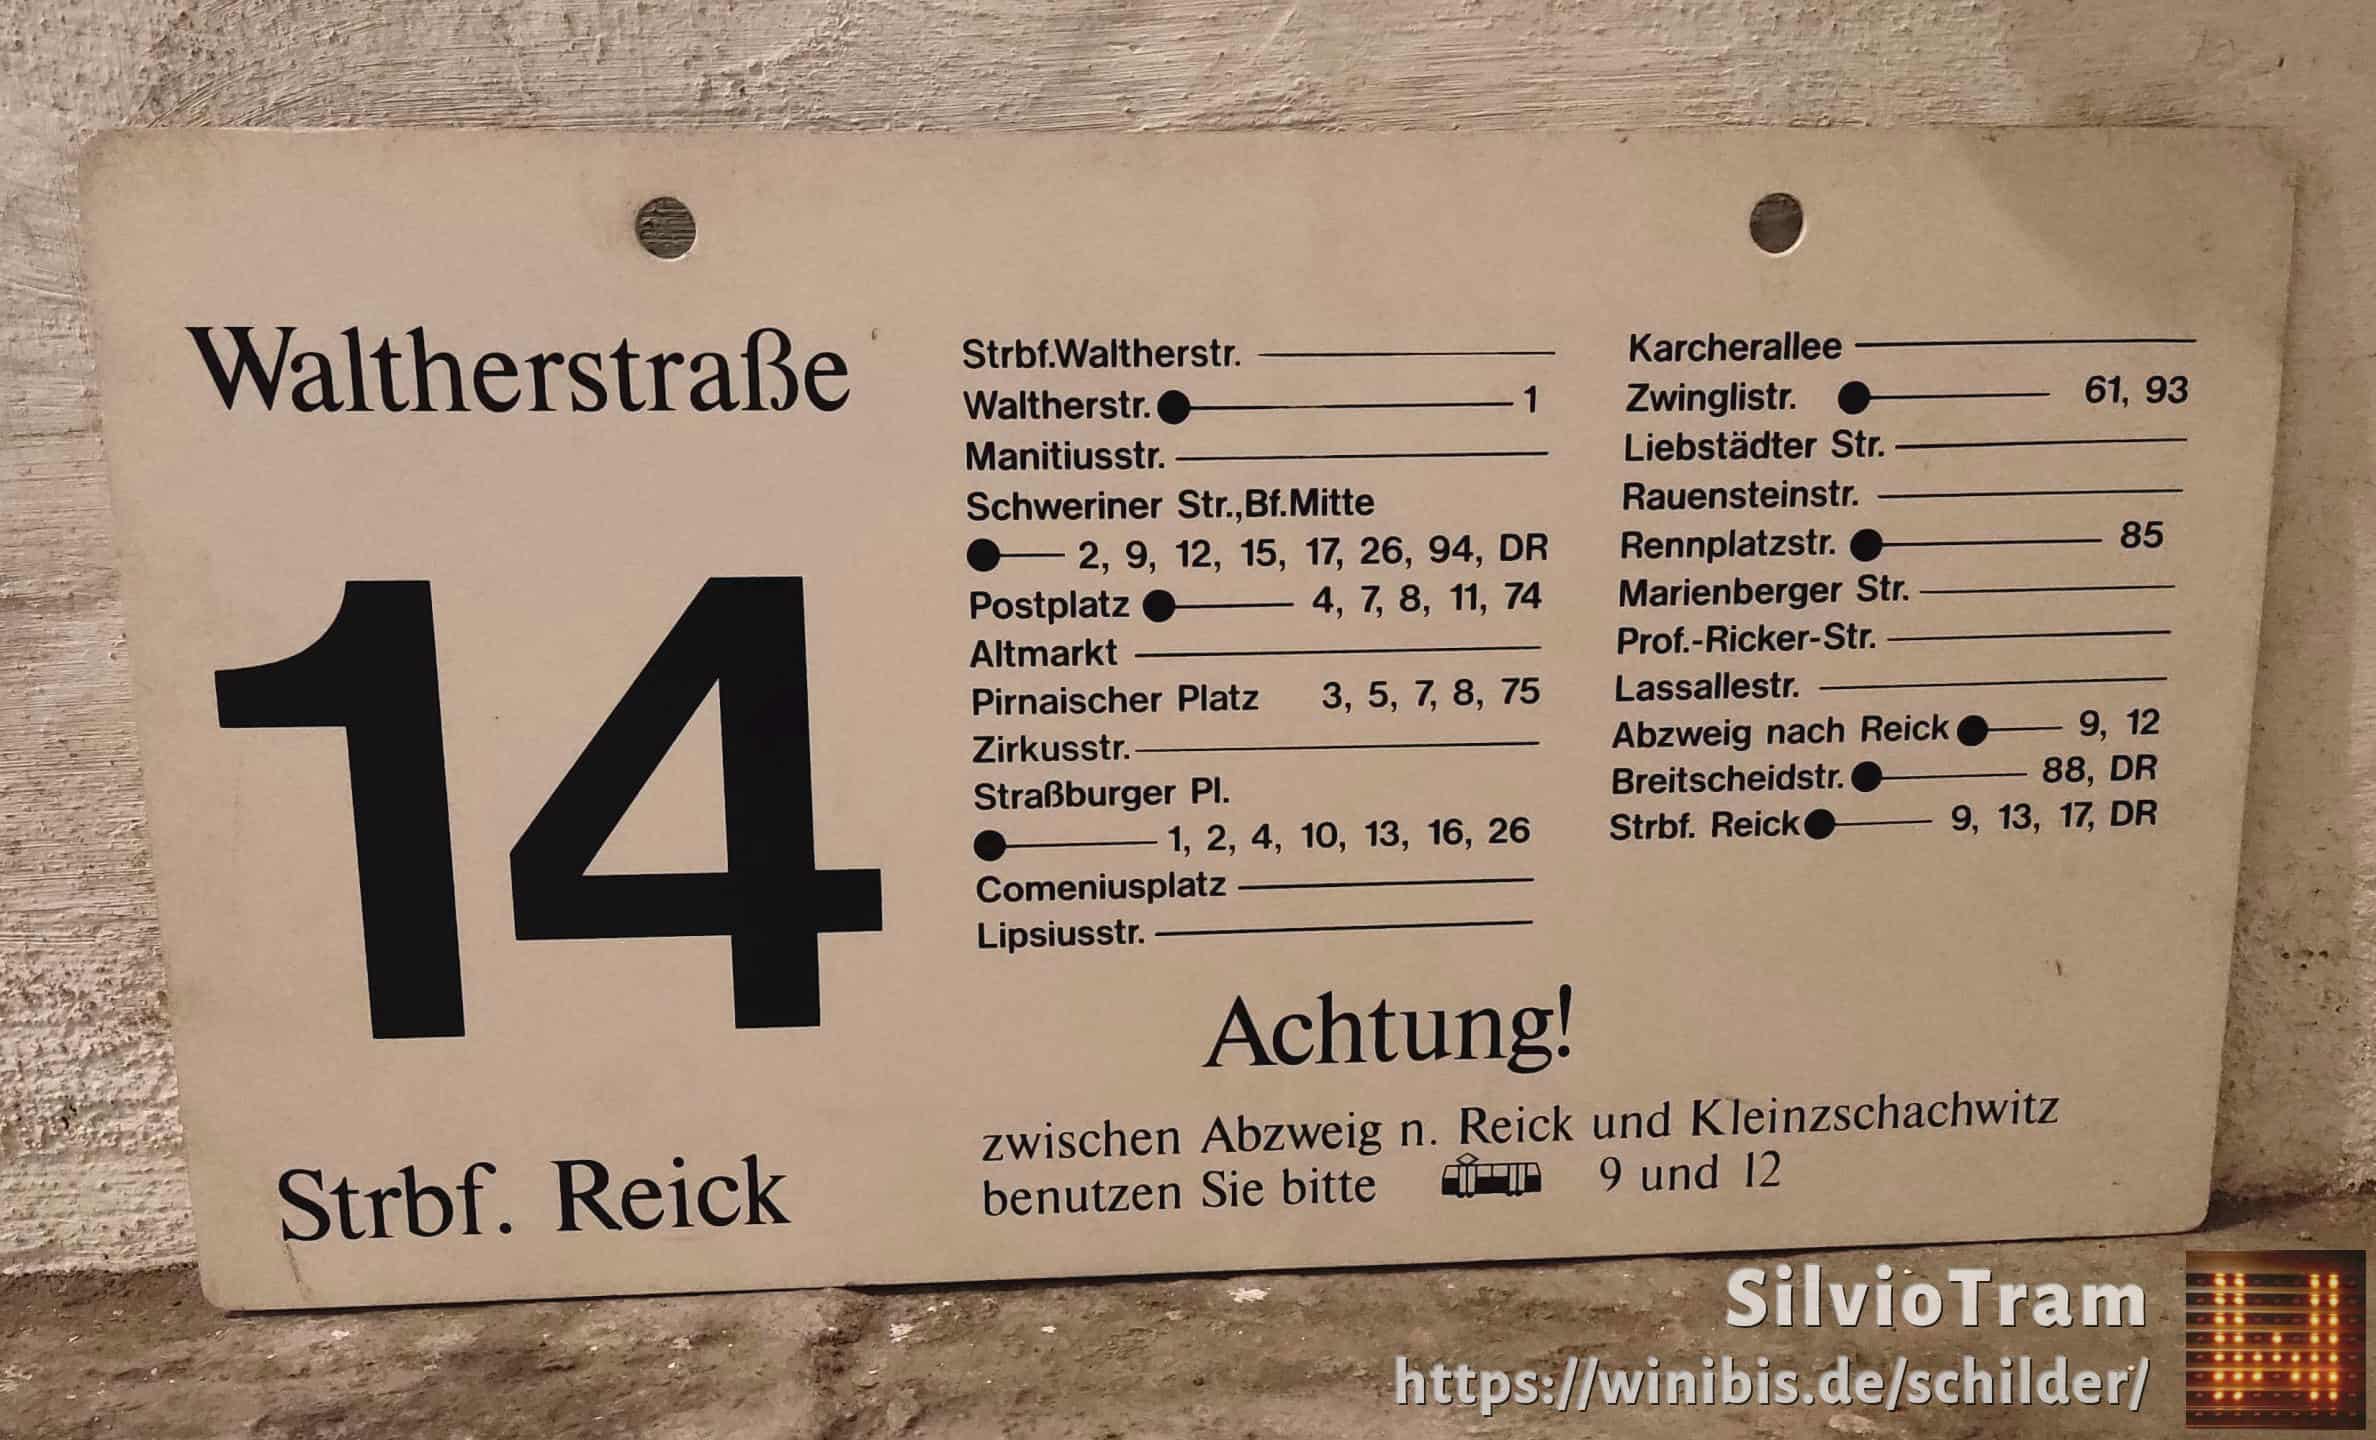 14 Waltherstraße – Strbf. Reick #4